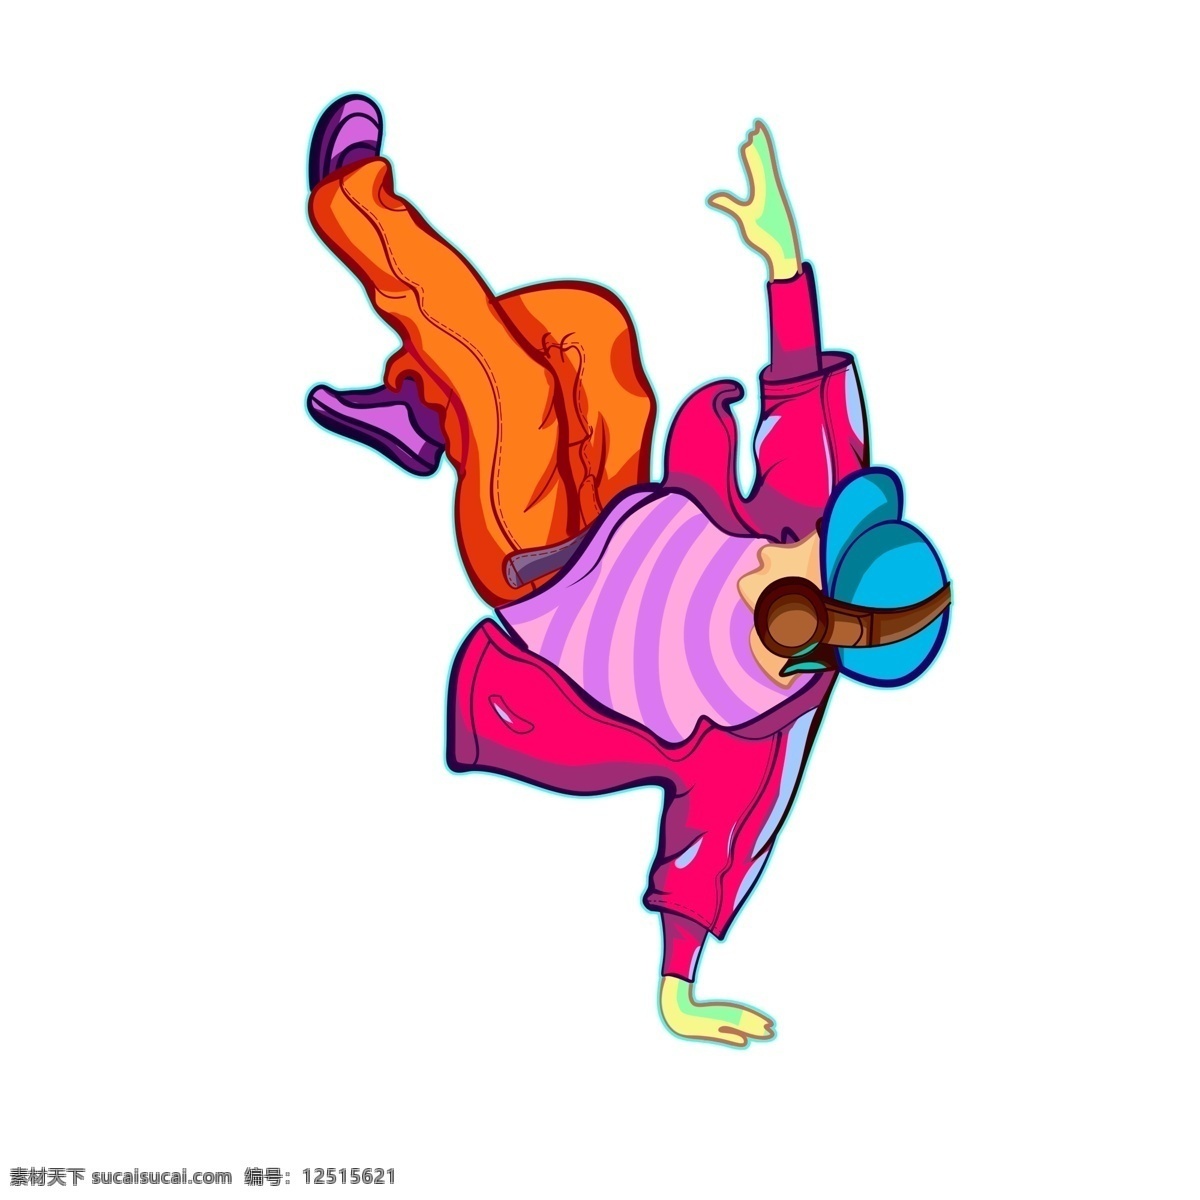 卡通 潮 漫 街舞 少年 创意 舞蹈 跳舞 人物设计 潮漫 街舞少年 嘻哈少年